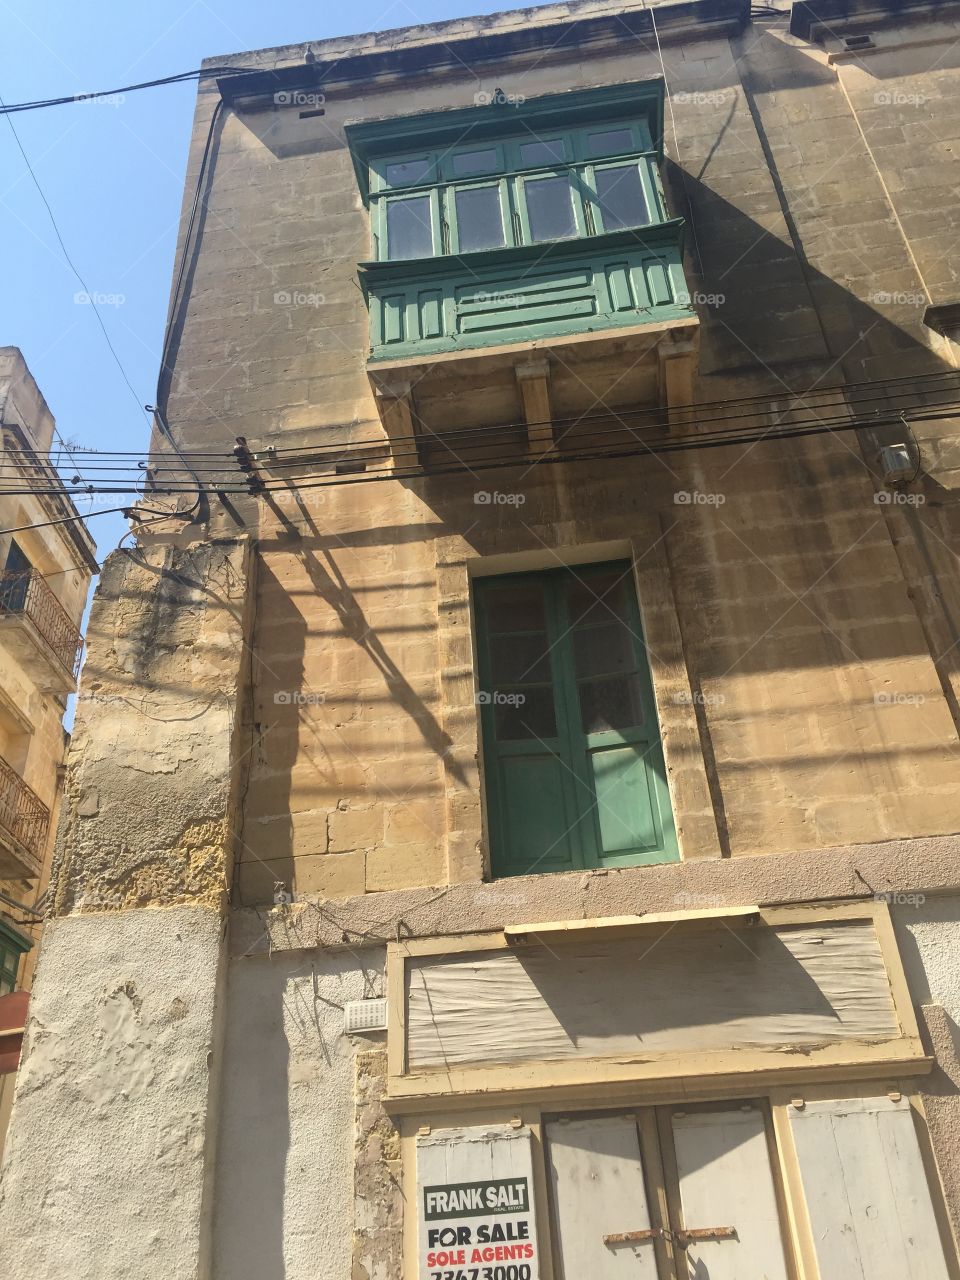 Windows around the World. Windows in the Capital City of Valletta, Malta.